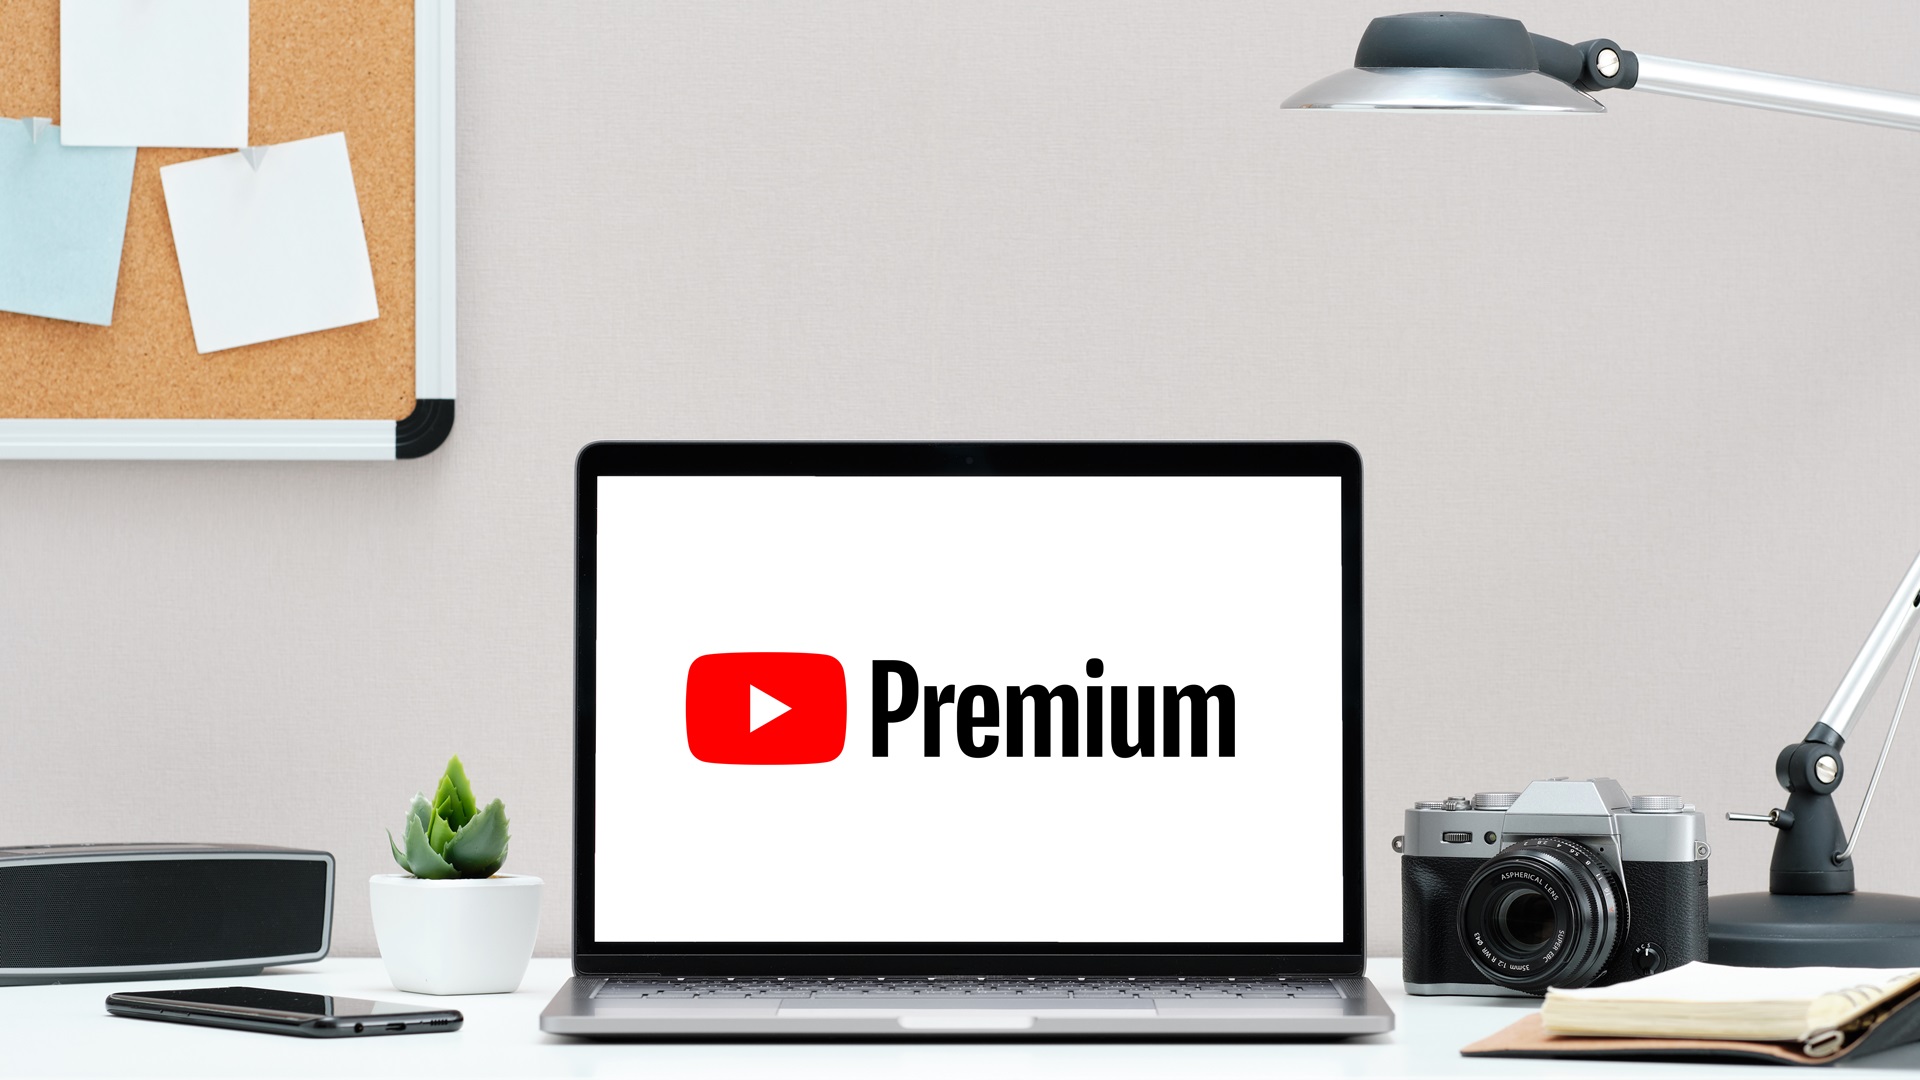 youtube premium kullanıcılarının en büyük hayal kırıklığı: kötü video önerileri!